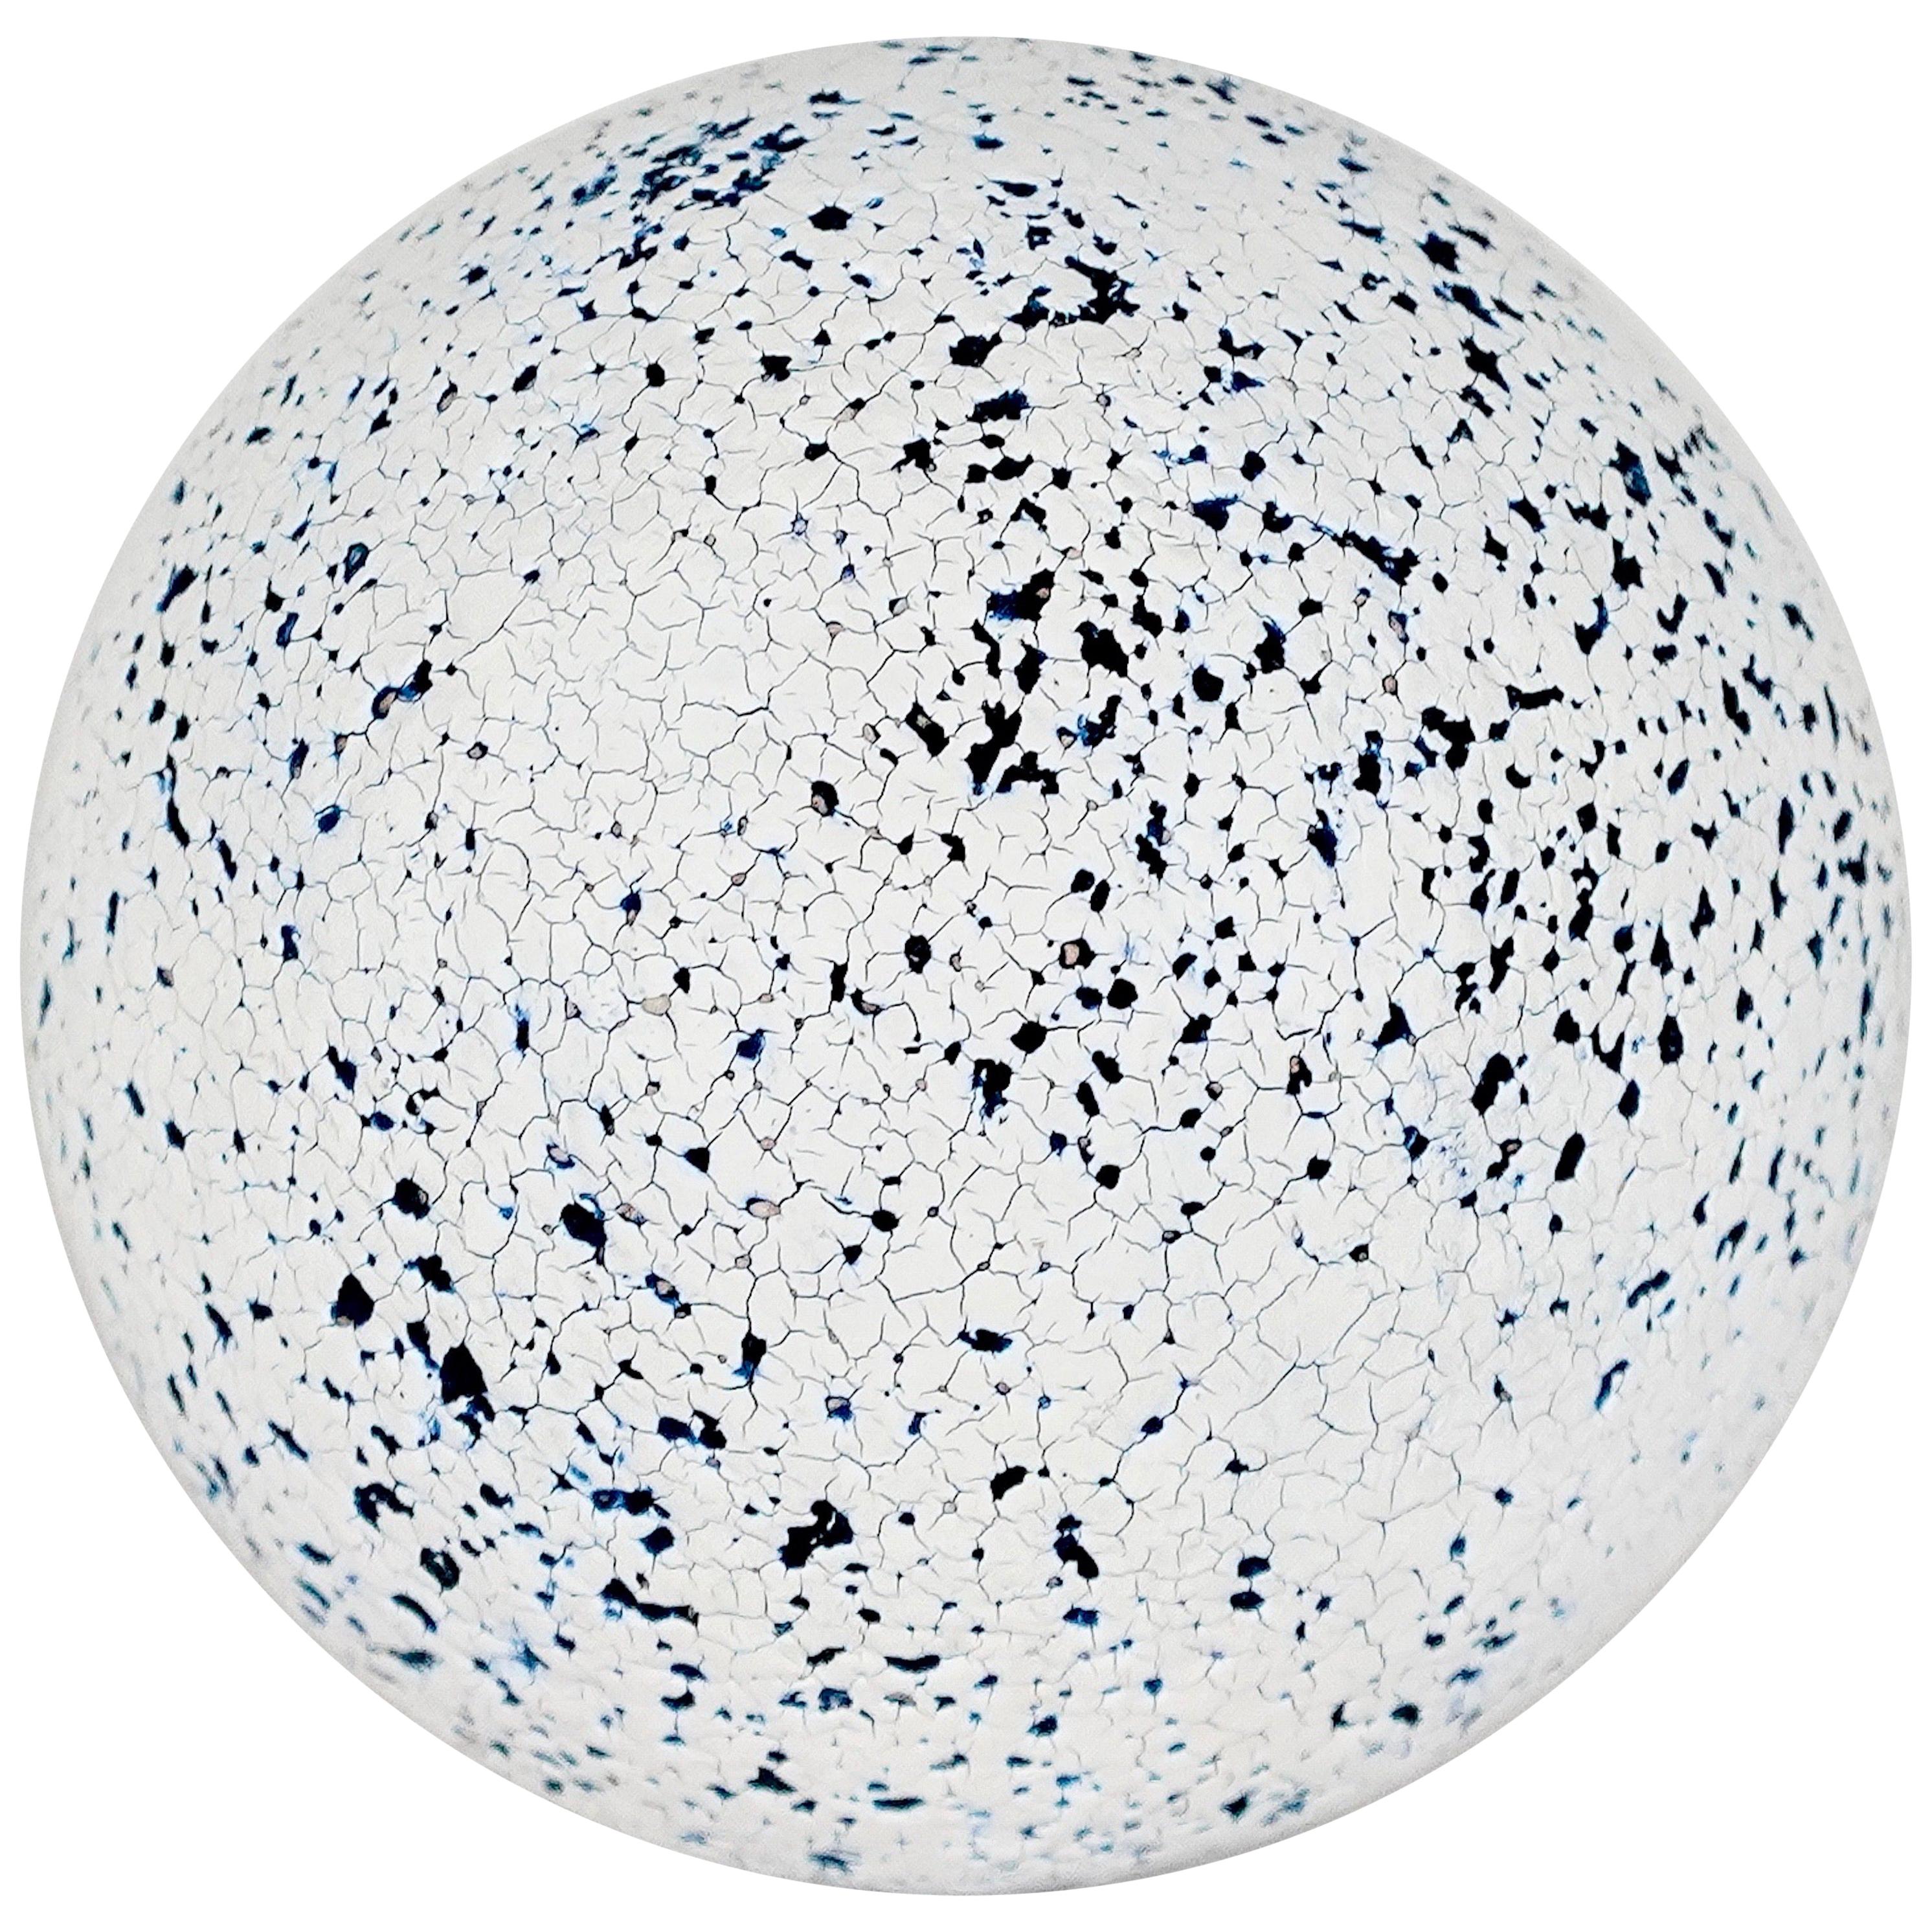 Sphère en céramique bleue, noire et blanche à facettes craquelées, sculpture réalisée à la main